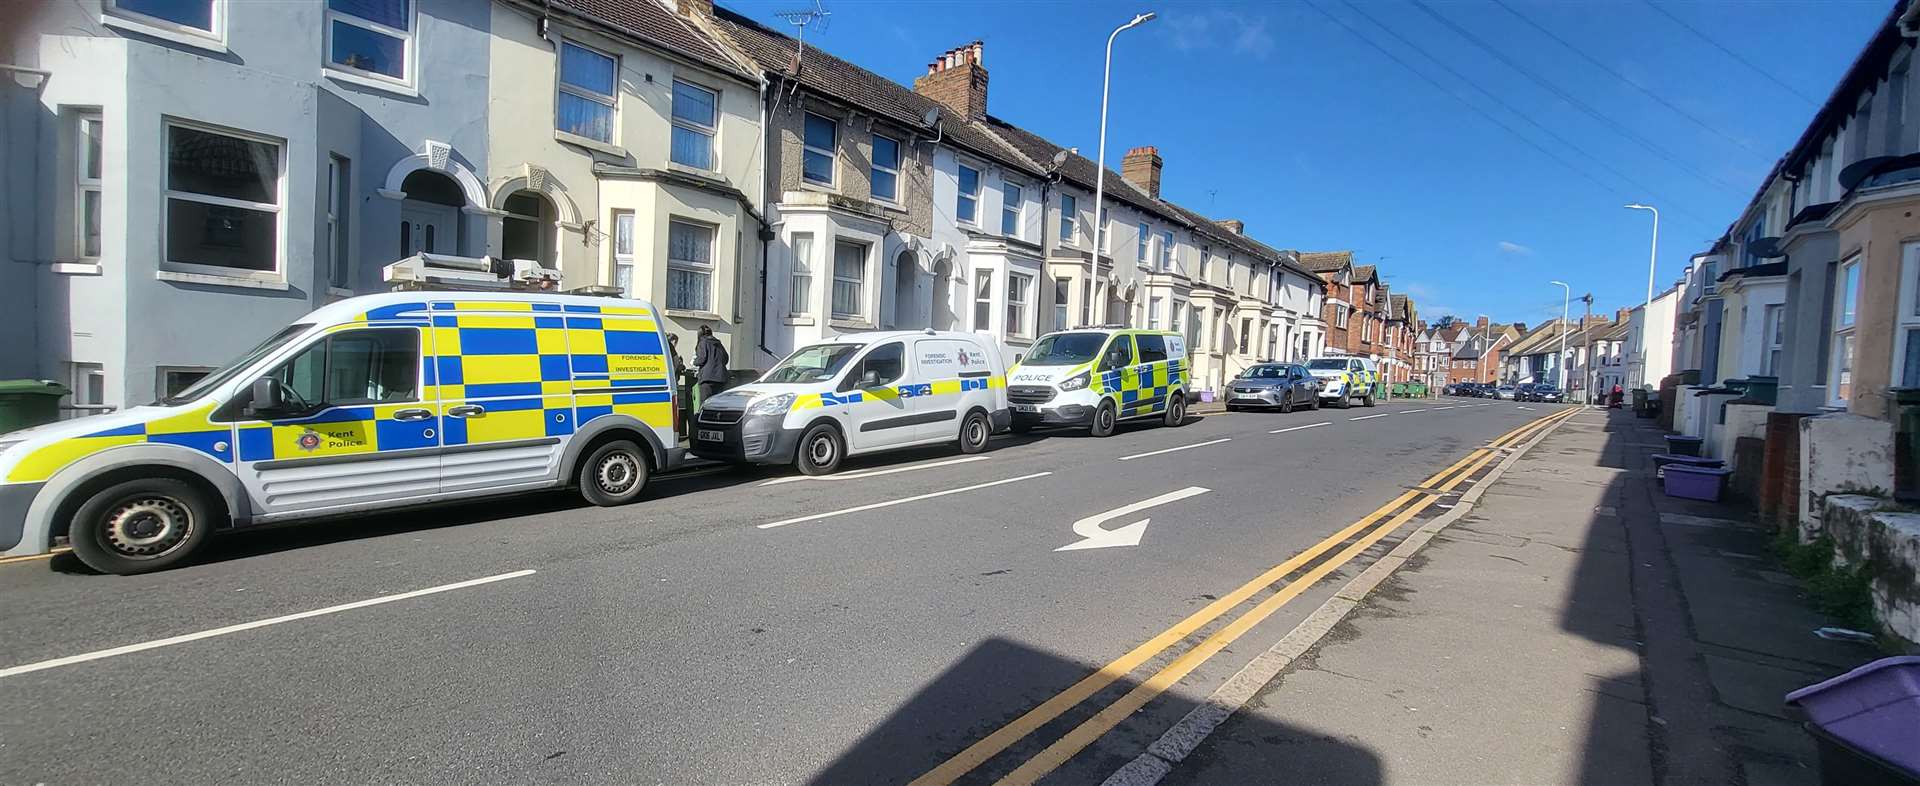 Police at the scene in Pavilion Road, Folkestone